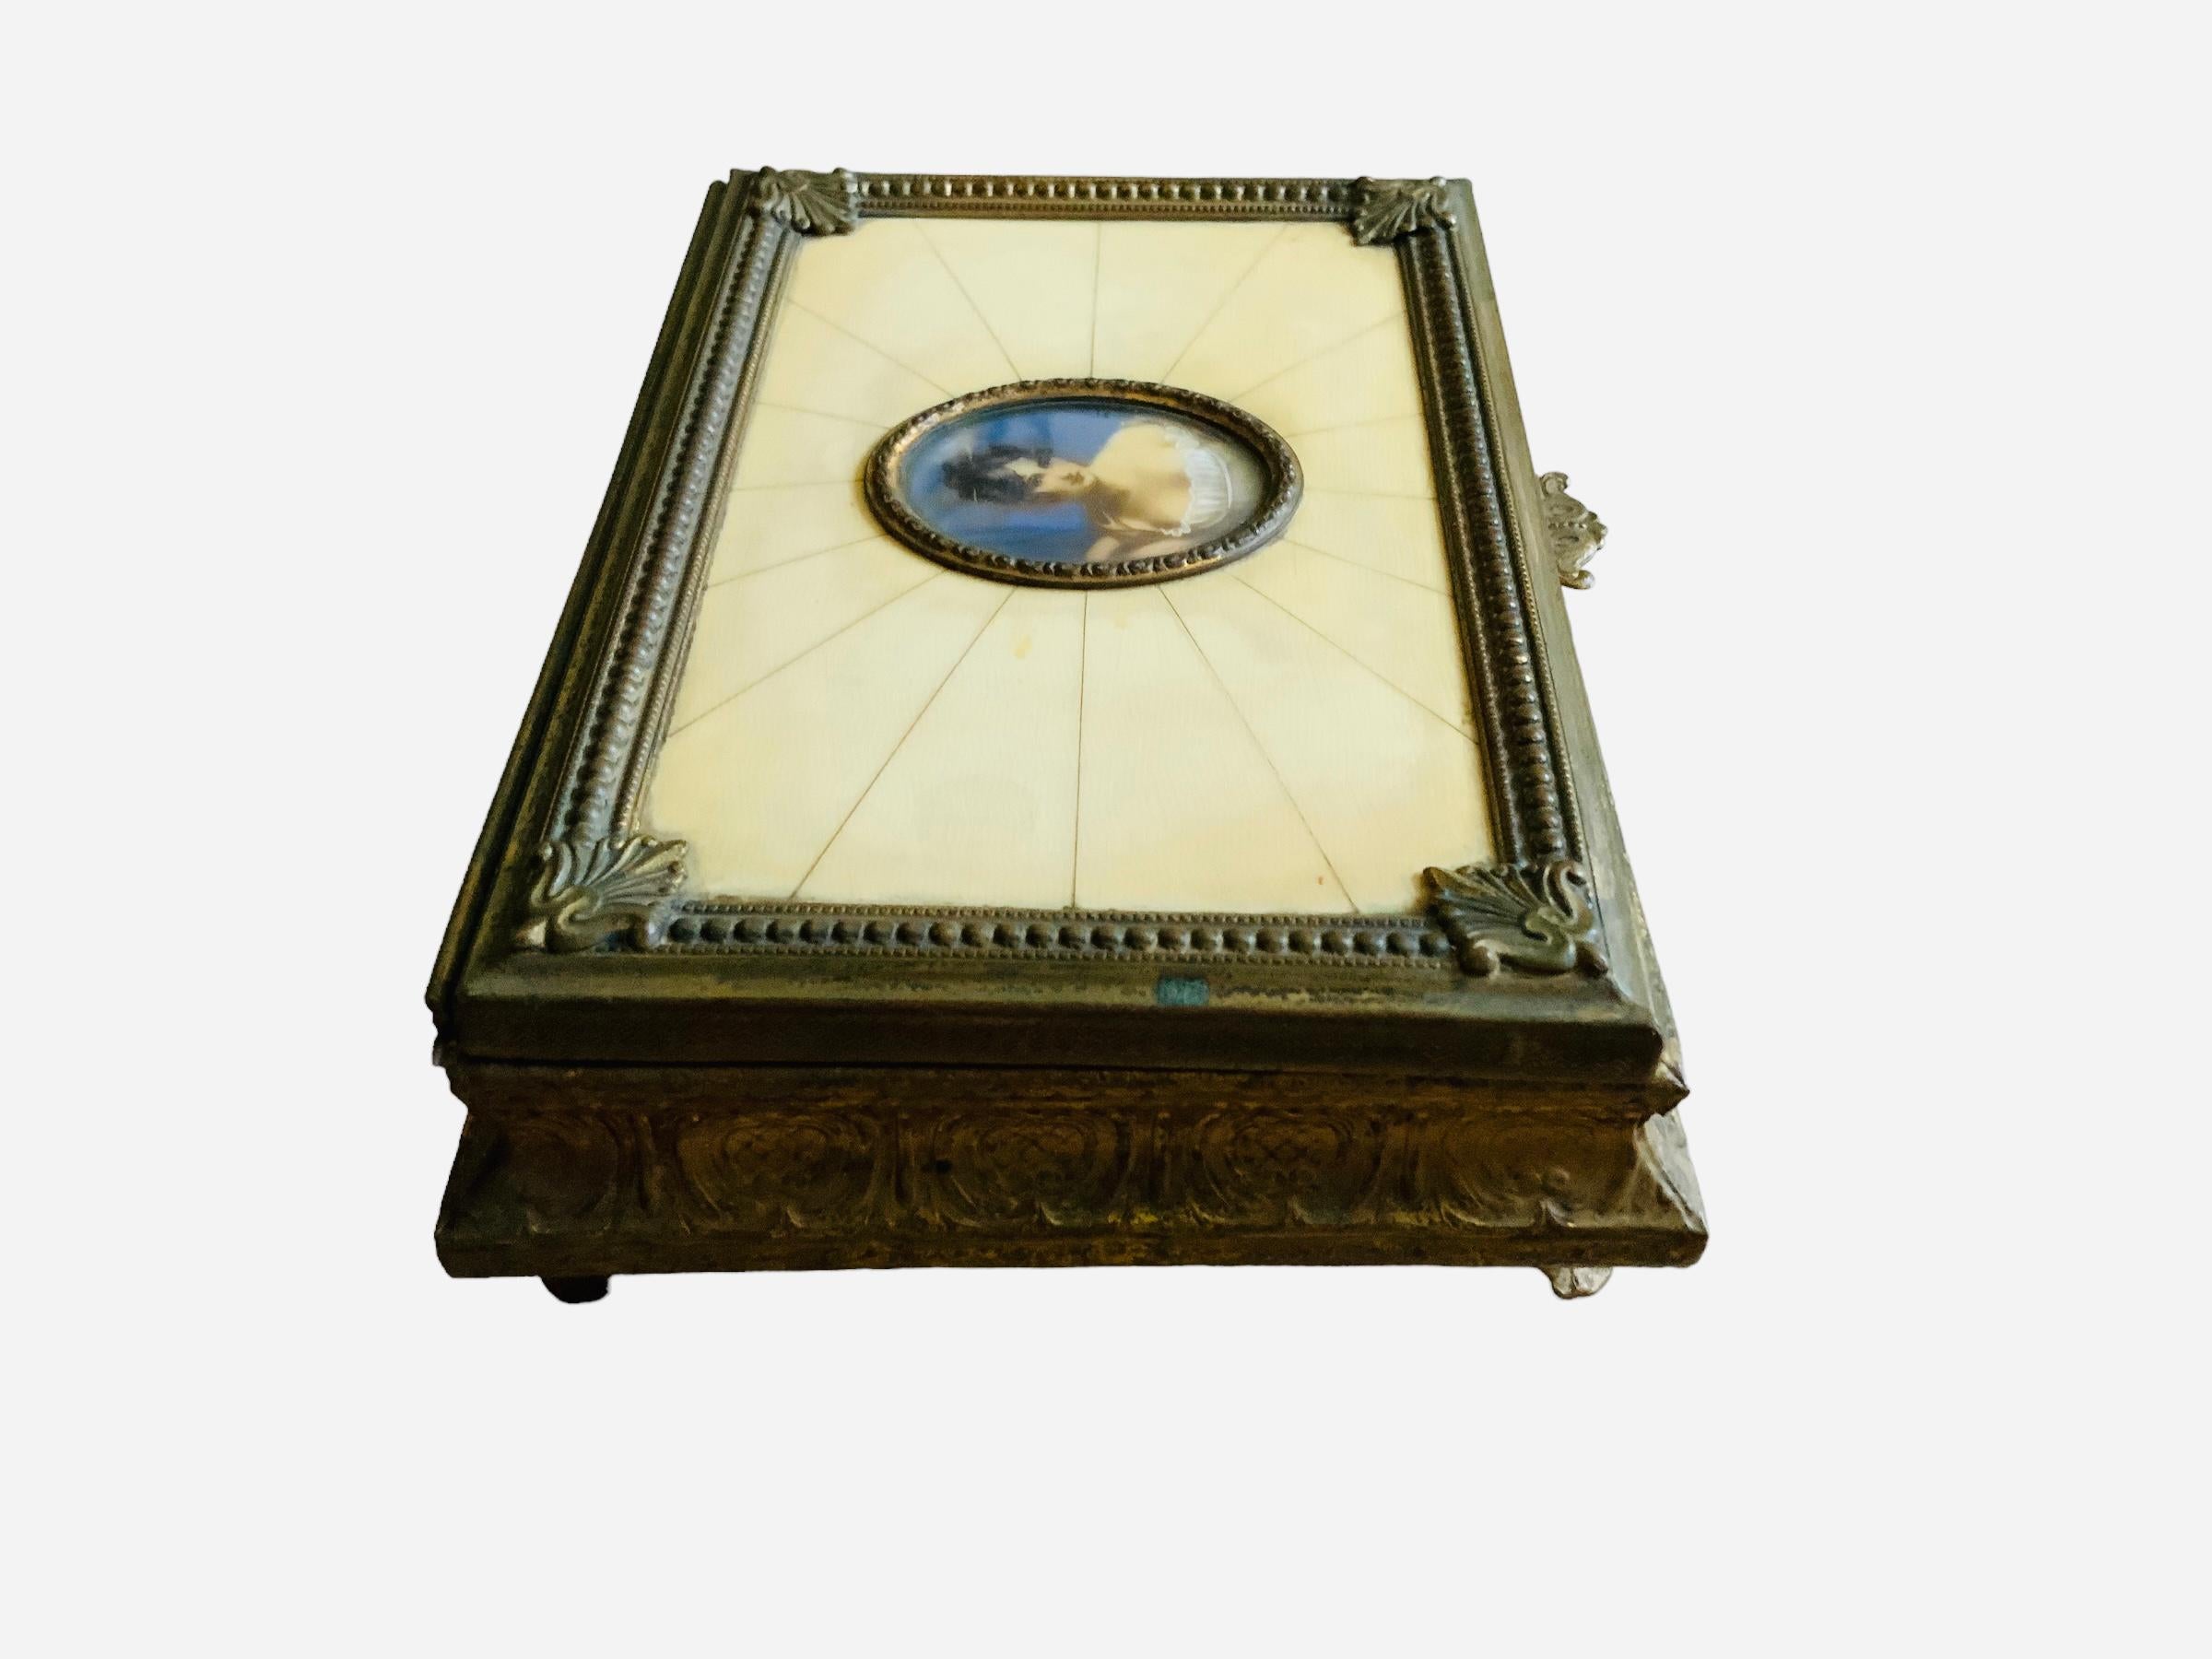 Il s'agit d'une boîte à musique italienne en métal bronzé à couvercle carré. Il représente un couvercle décoré au centre d'un portrait de Madame Récamier peint à la main au 19e siècle, orné d'un cadre ovale en métal patiné. Un panneau en faux ivoire